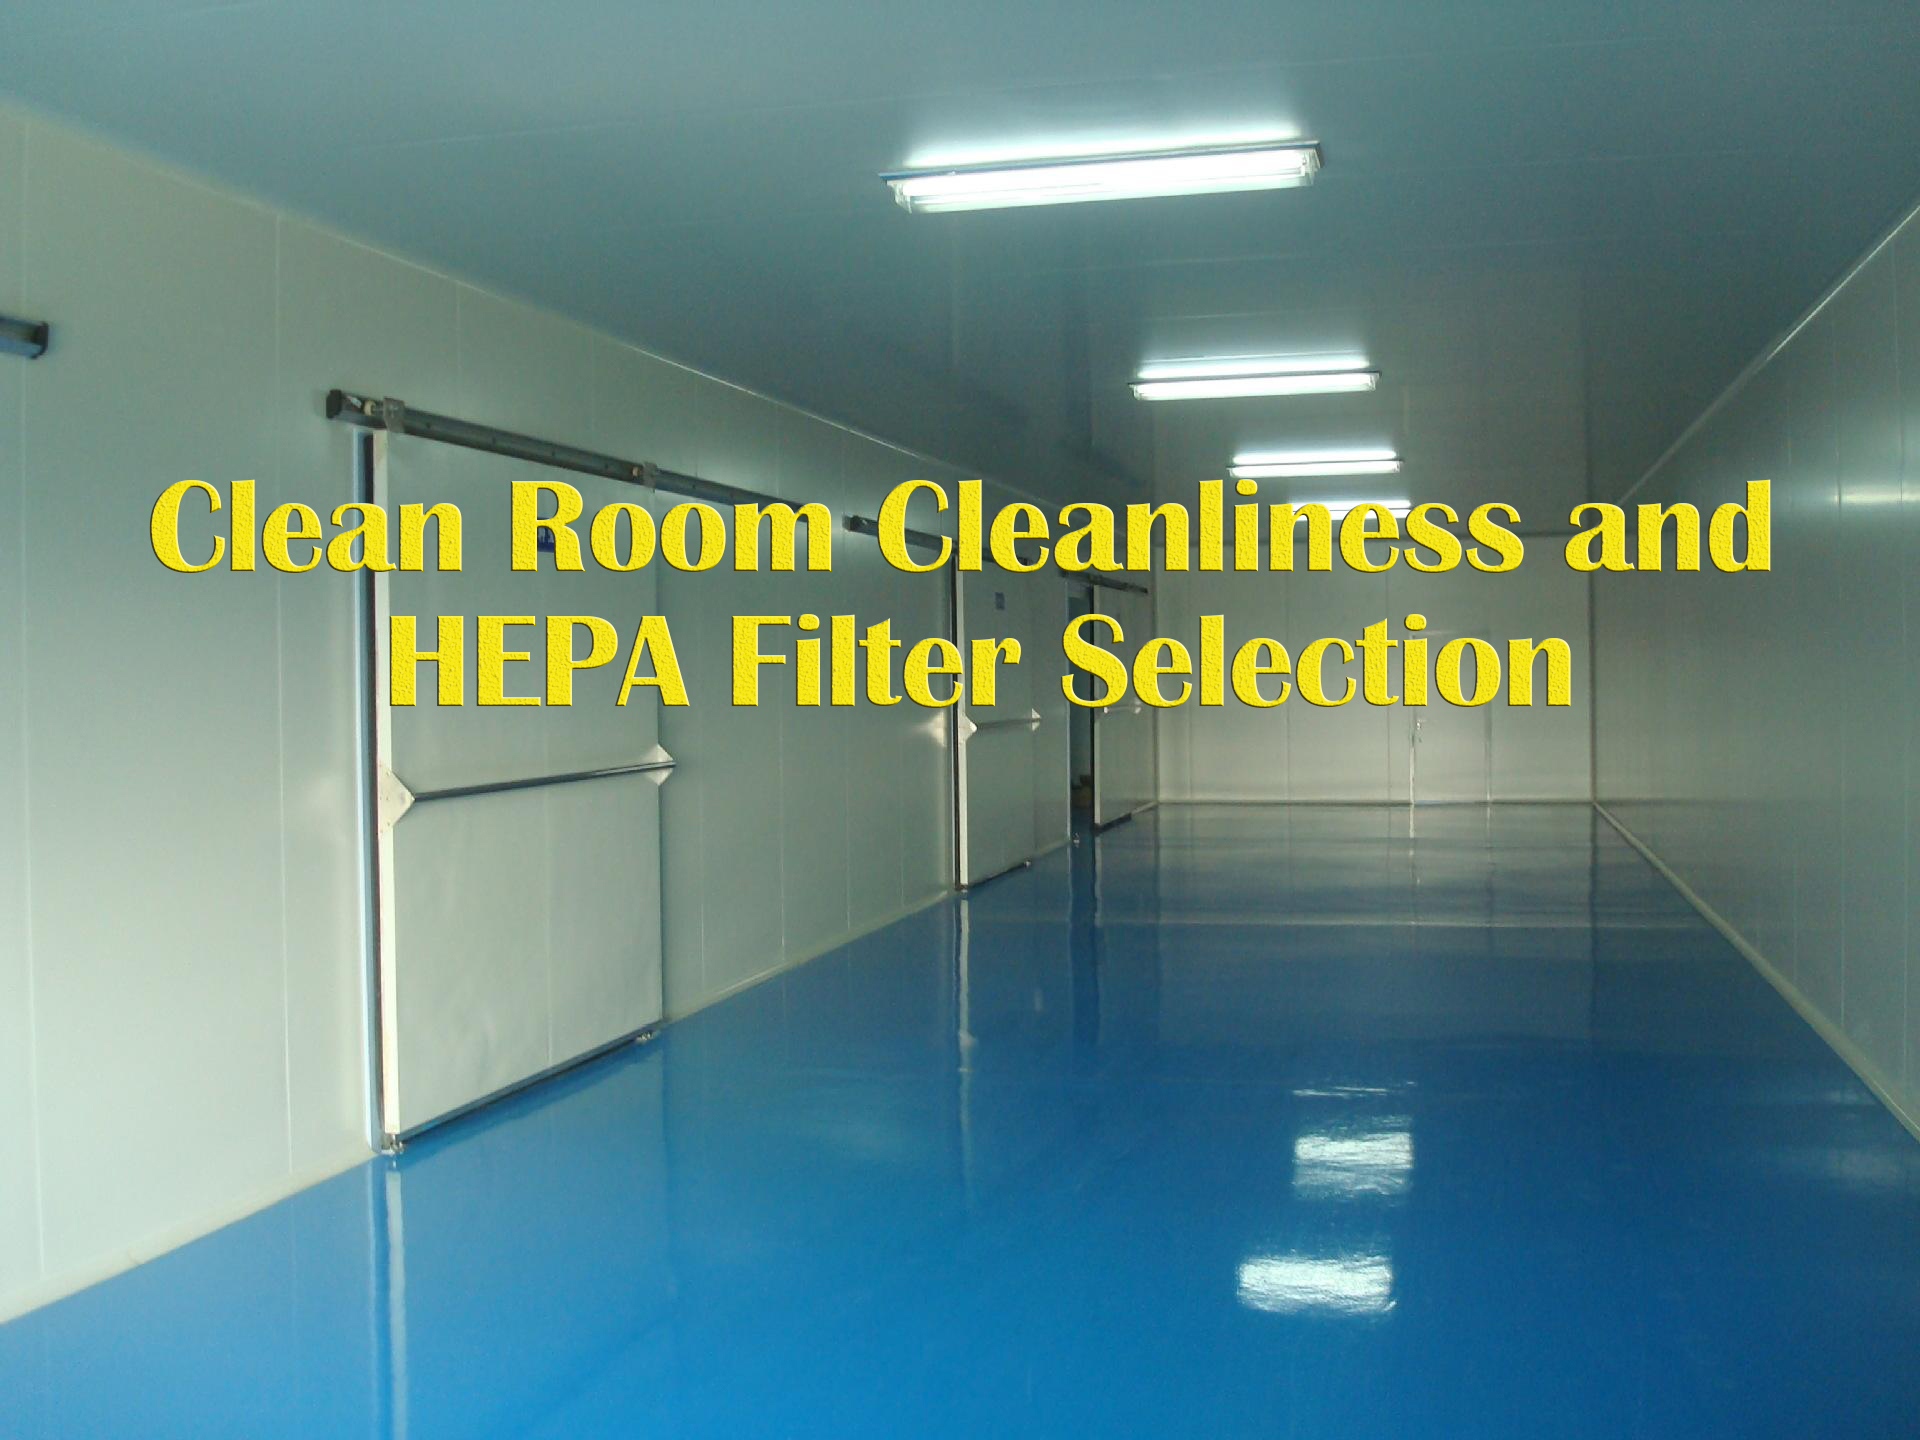 Temiz oda temizliği ve hepa filtre seçiminin yanlış anlaşılması